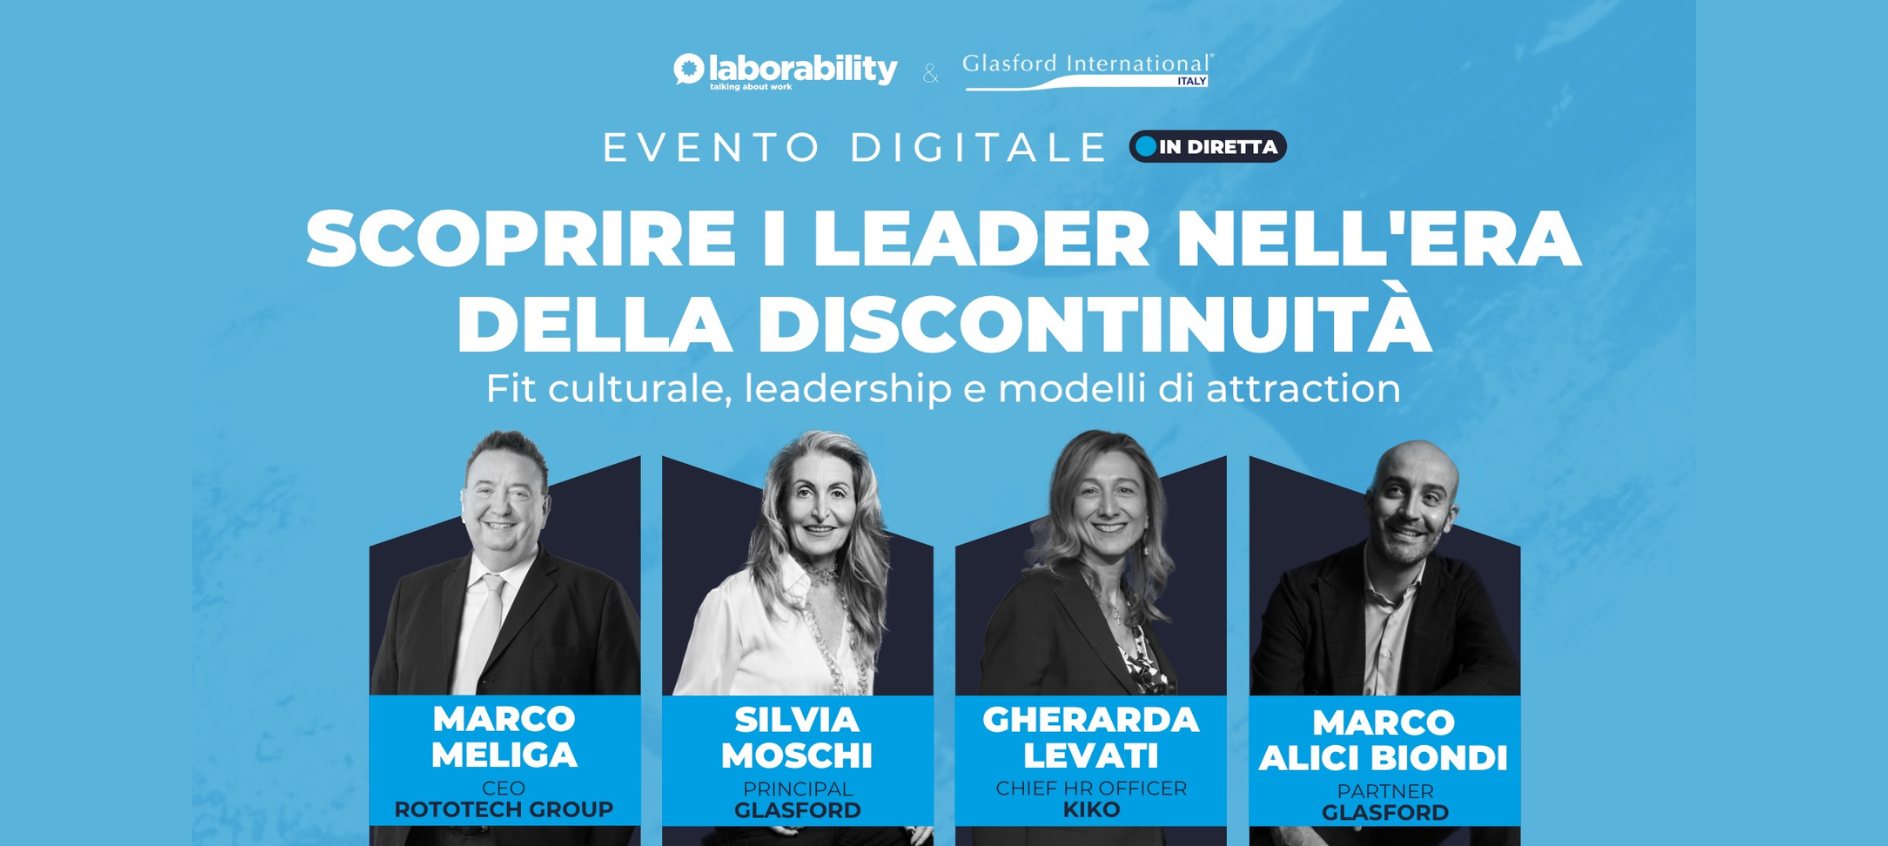 Glasford International Italy & Laborability - Scoprire i leader nell'era della discontinuità